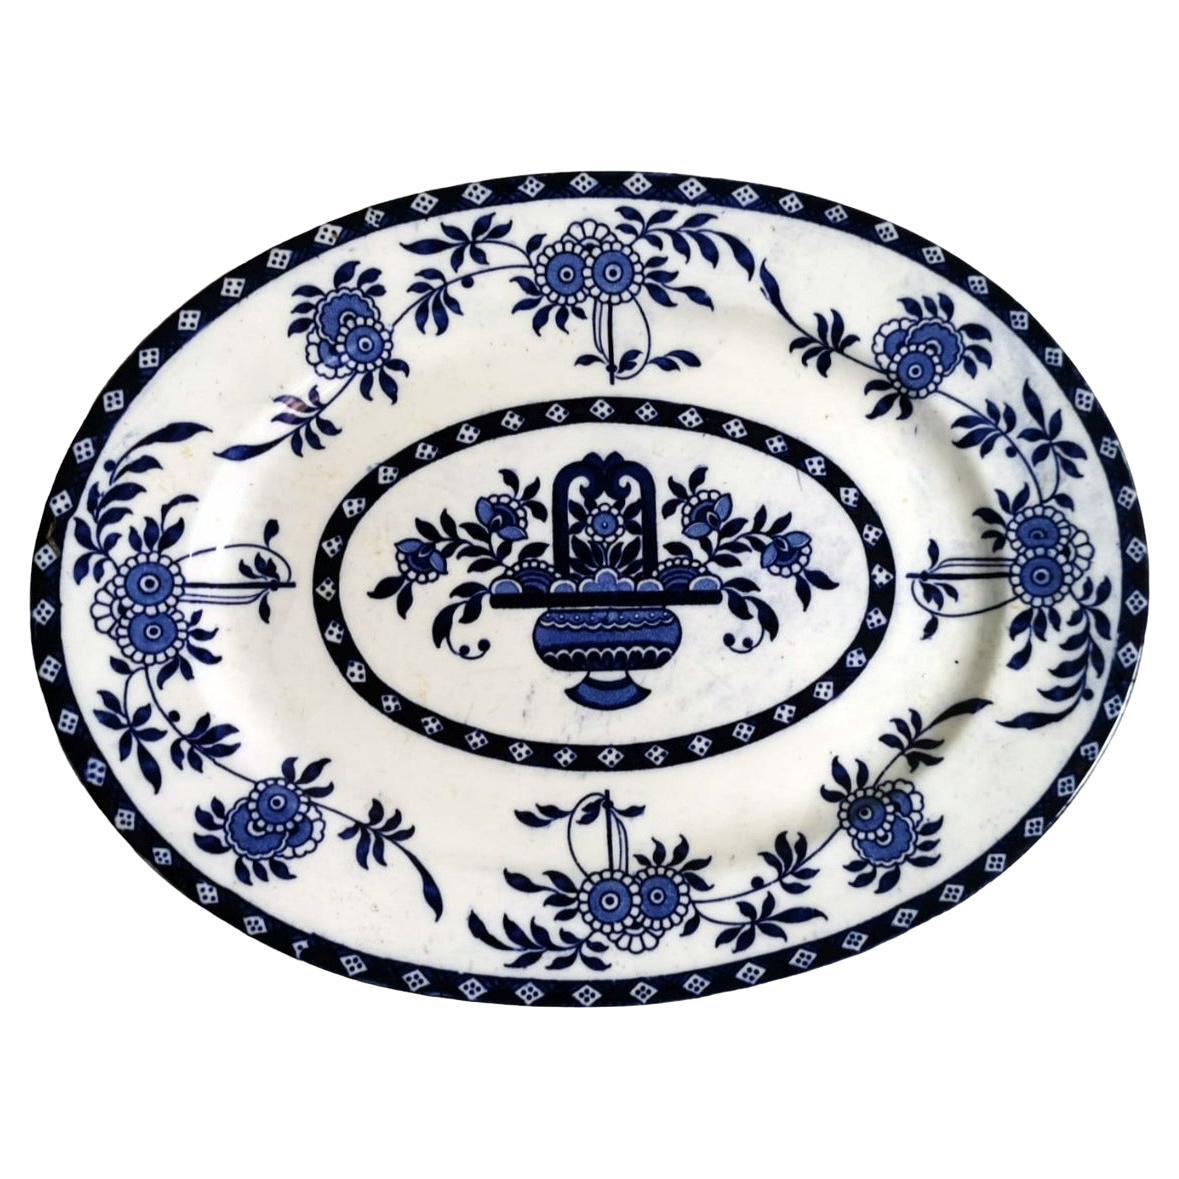 Staffordshire-Keramik Englisches Tablett mit blauen Transfergeschirr-Dekorationen